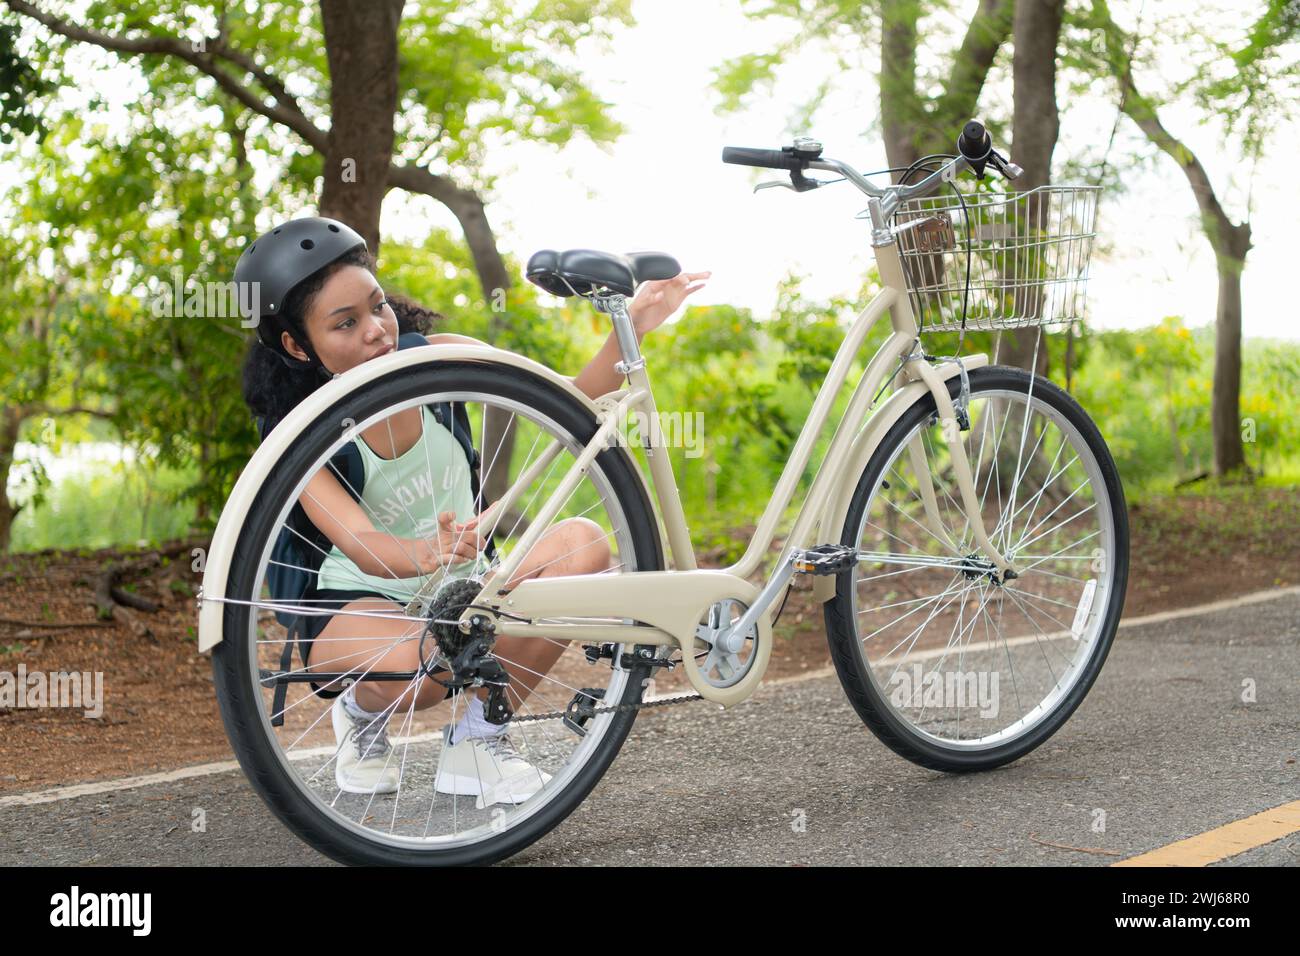 Junge Frau mit Rucksack und Solarpanel zum Aufladen des Smartphones. Während sie die Bereitschaft ihres Fahrrads überprüft. Vor der Fahrt Stockfoto